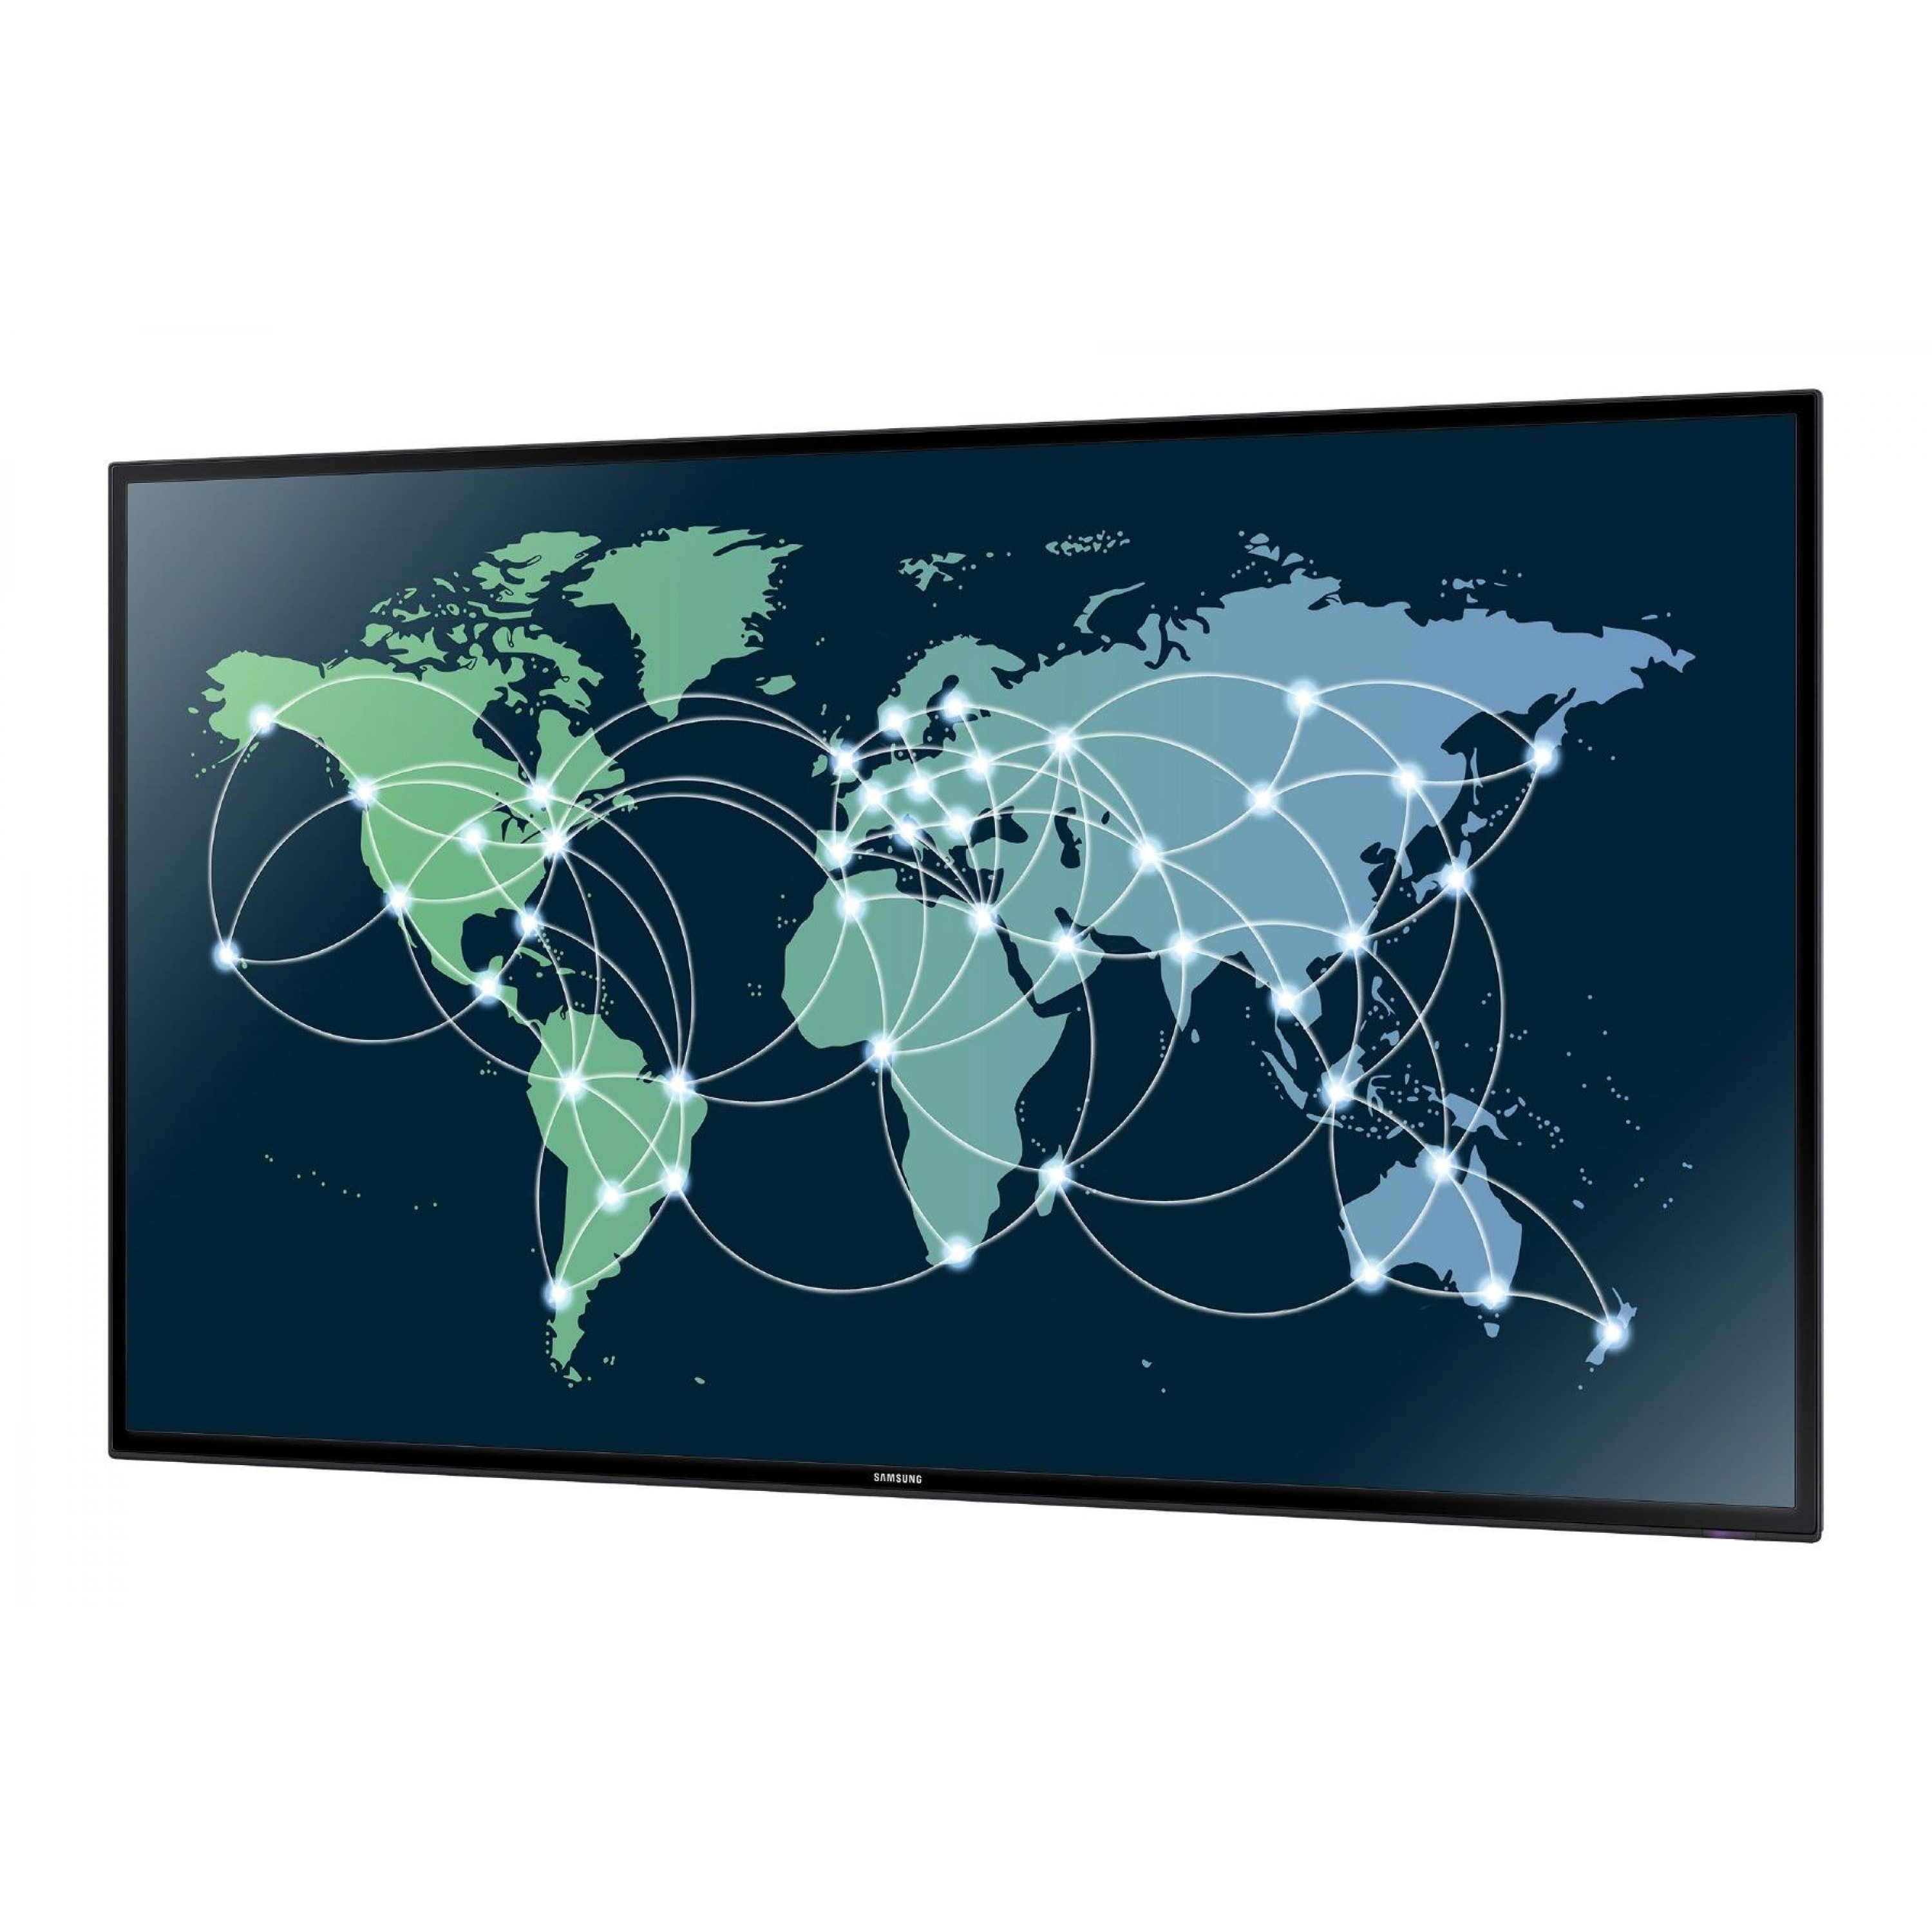 Сеть интернета экран. Всемирная сеть на мировой карте. Карта глобального интернета. Мировая сеть интернет карта.